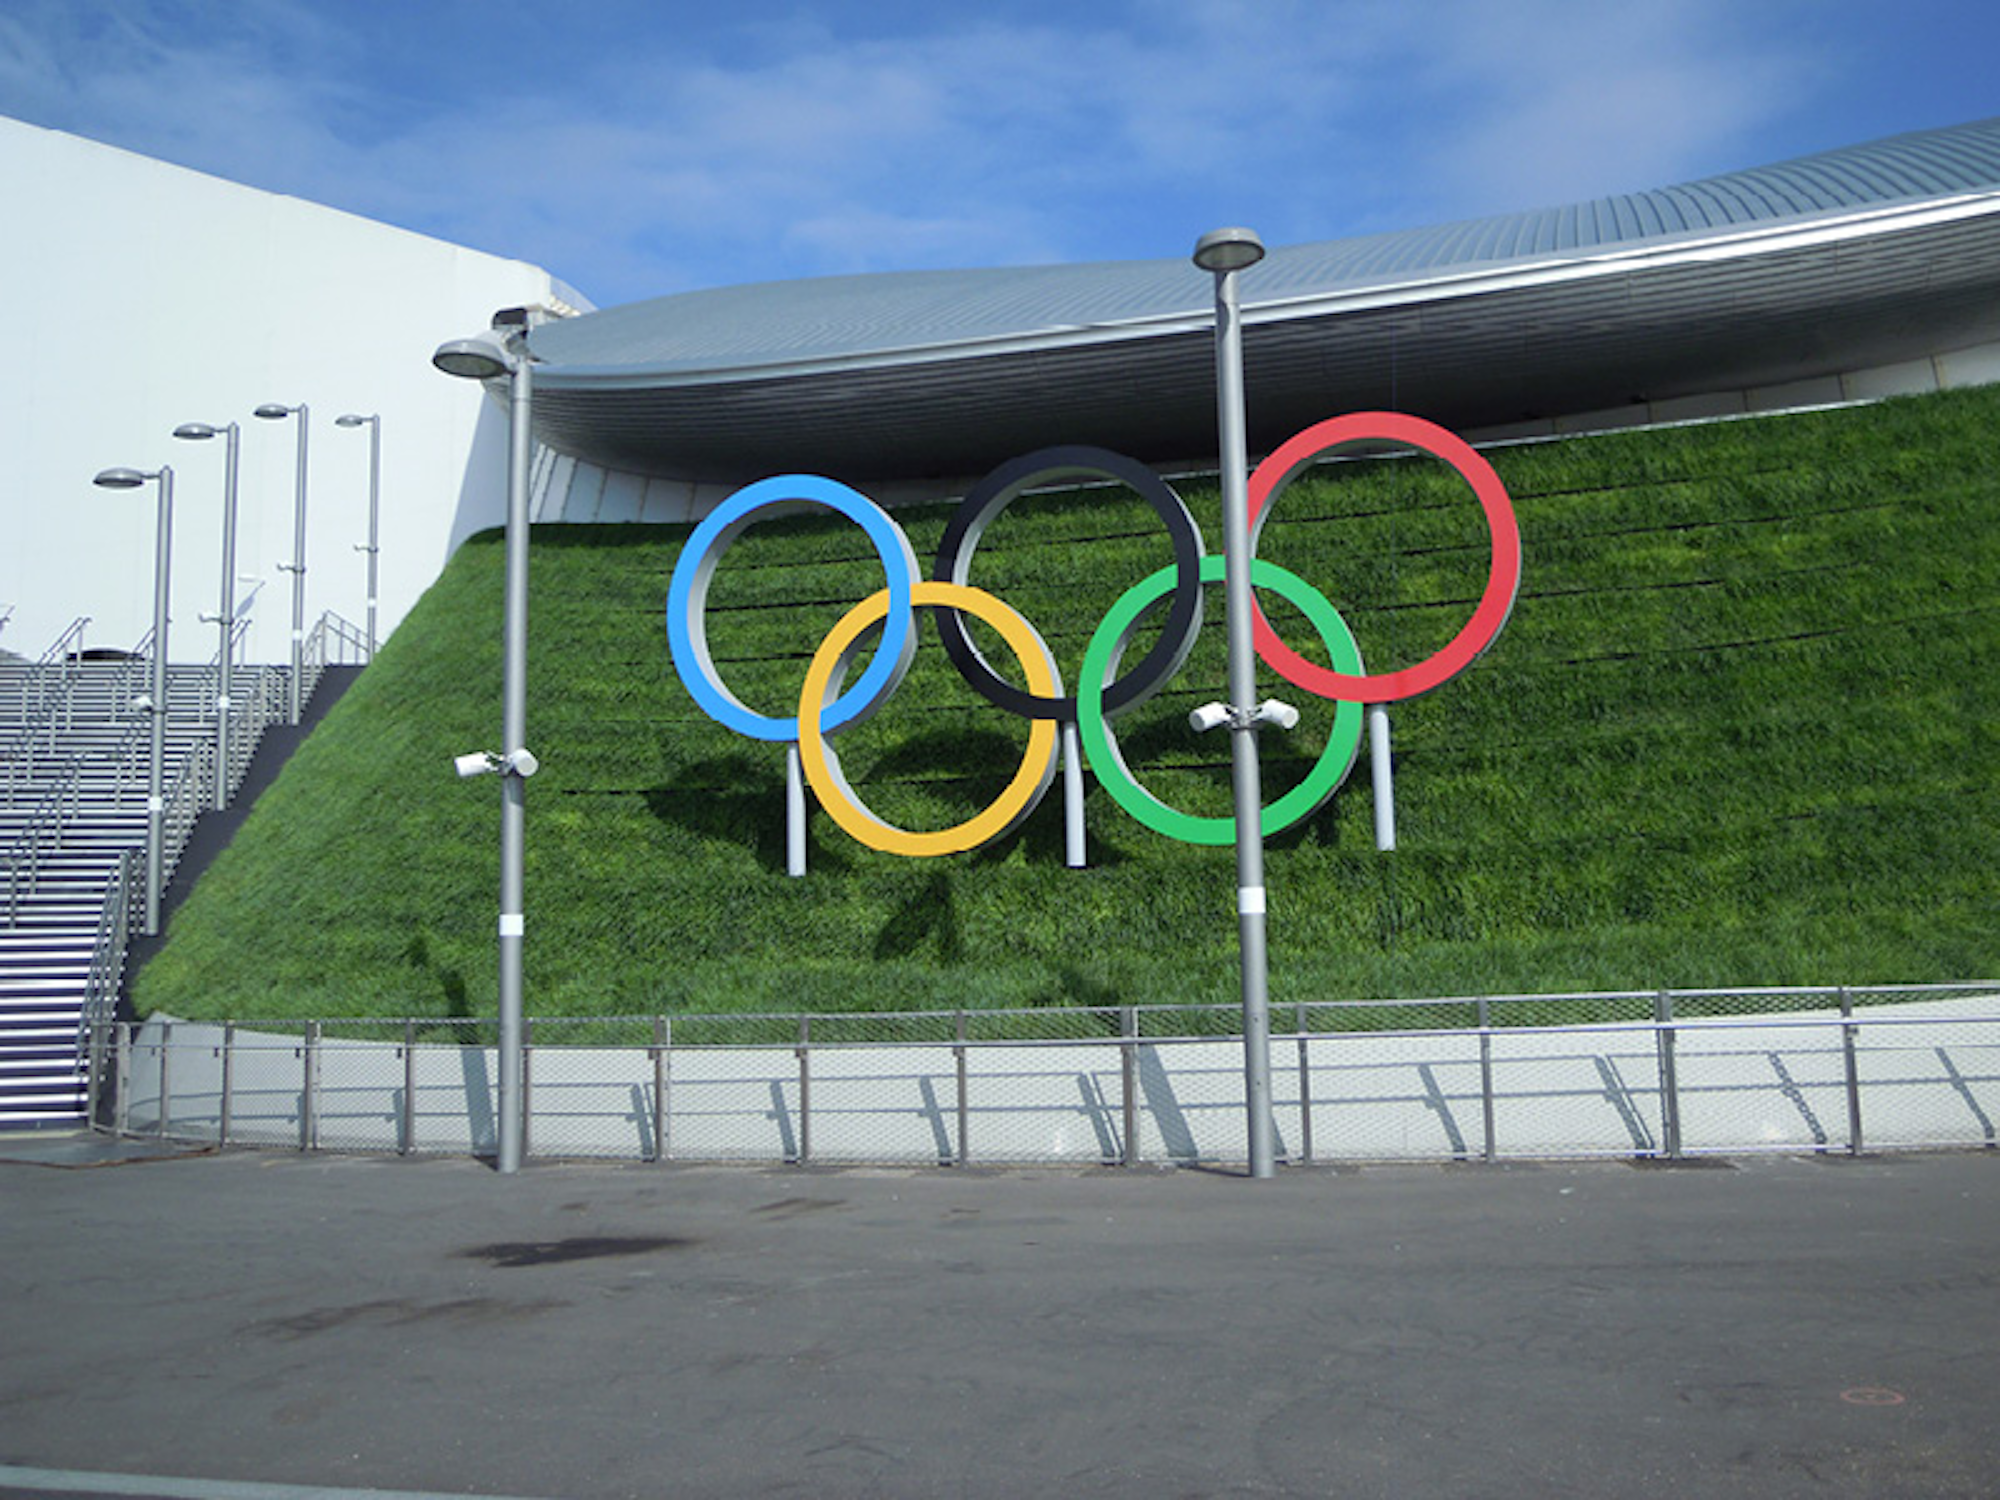 Olympics Aquatic Centre